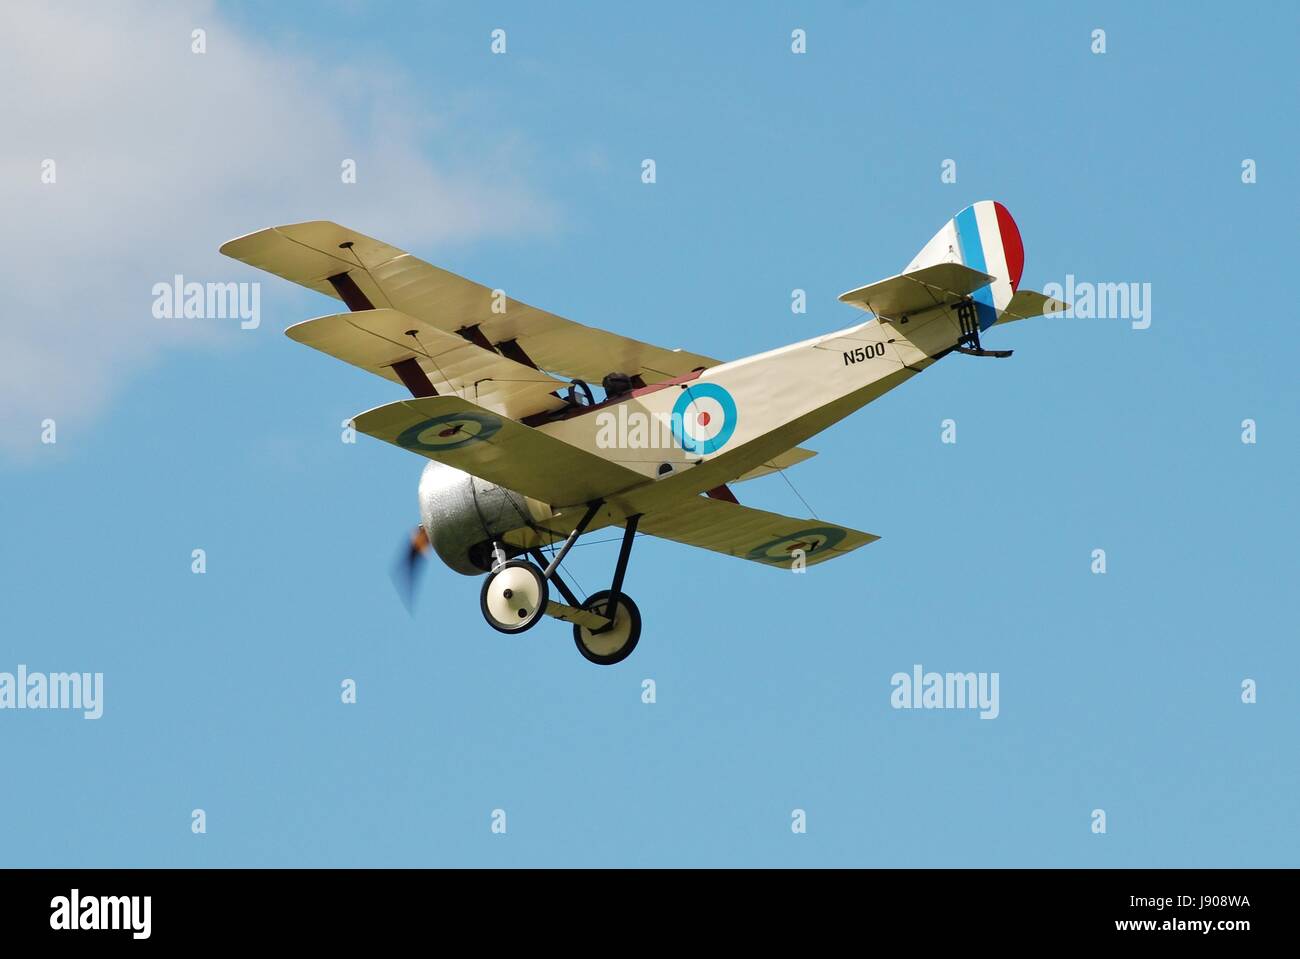 Une réplique Sopwith triplane N500 de la Grande Guerre à la prestation de l'équipe d'affichage Dunsfold aéronautique à Surrey, Angleterre le 23 août 2014. Banque D'Images